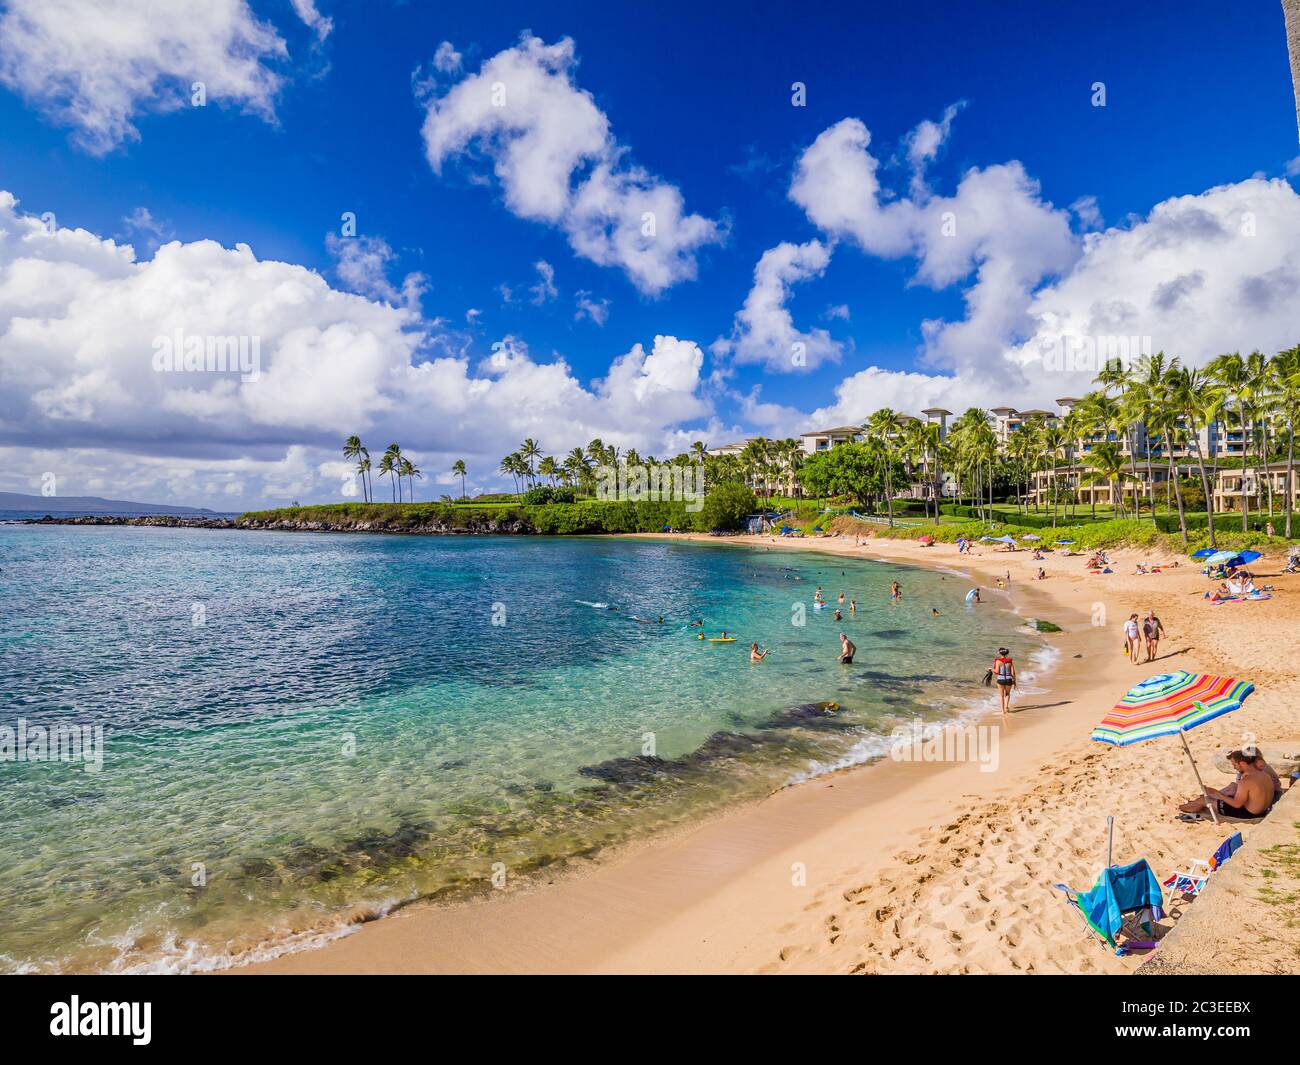 Kapalua Beach Bay, Maui, Islas Hawaianas - Aug 2019: Tranquilo, elegante, pintoresco, Kapalua cuenta con un hermoso fondo marino y un ambiente ideal para la familia vac Foto de stock